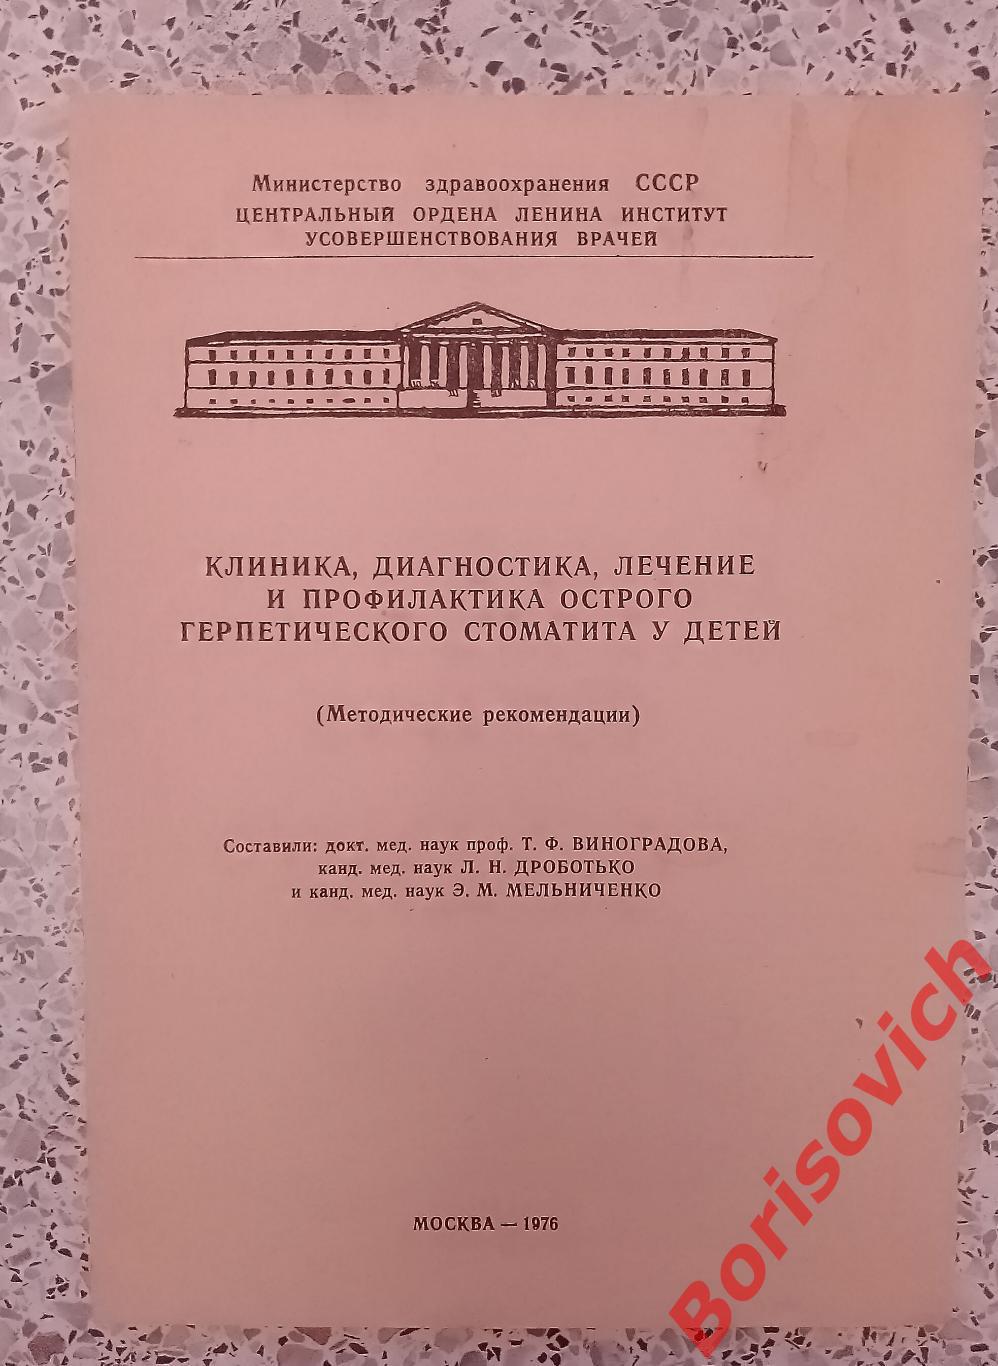 Лечение и профилактика герпетического стоматита у детей 1976 г Тираж 1000